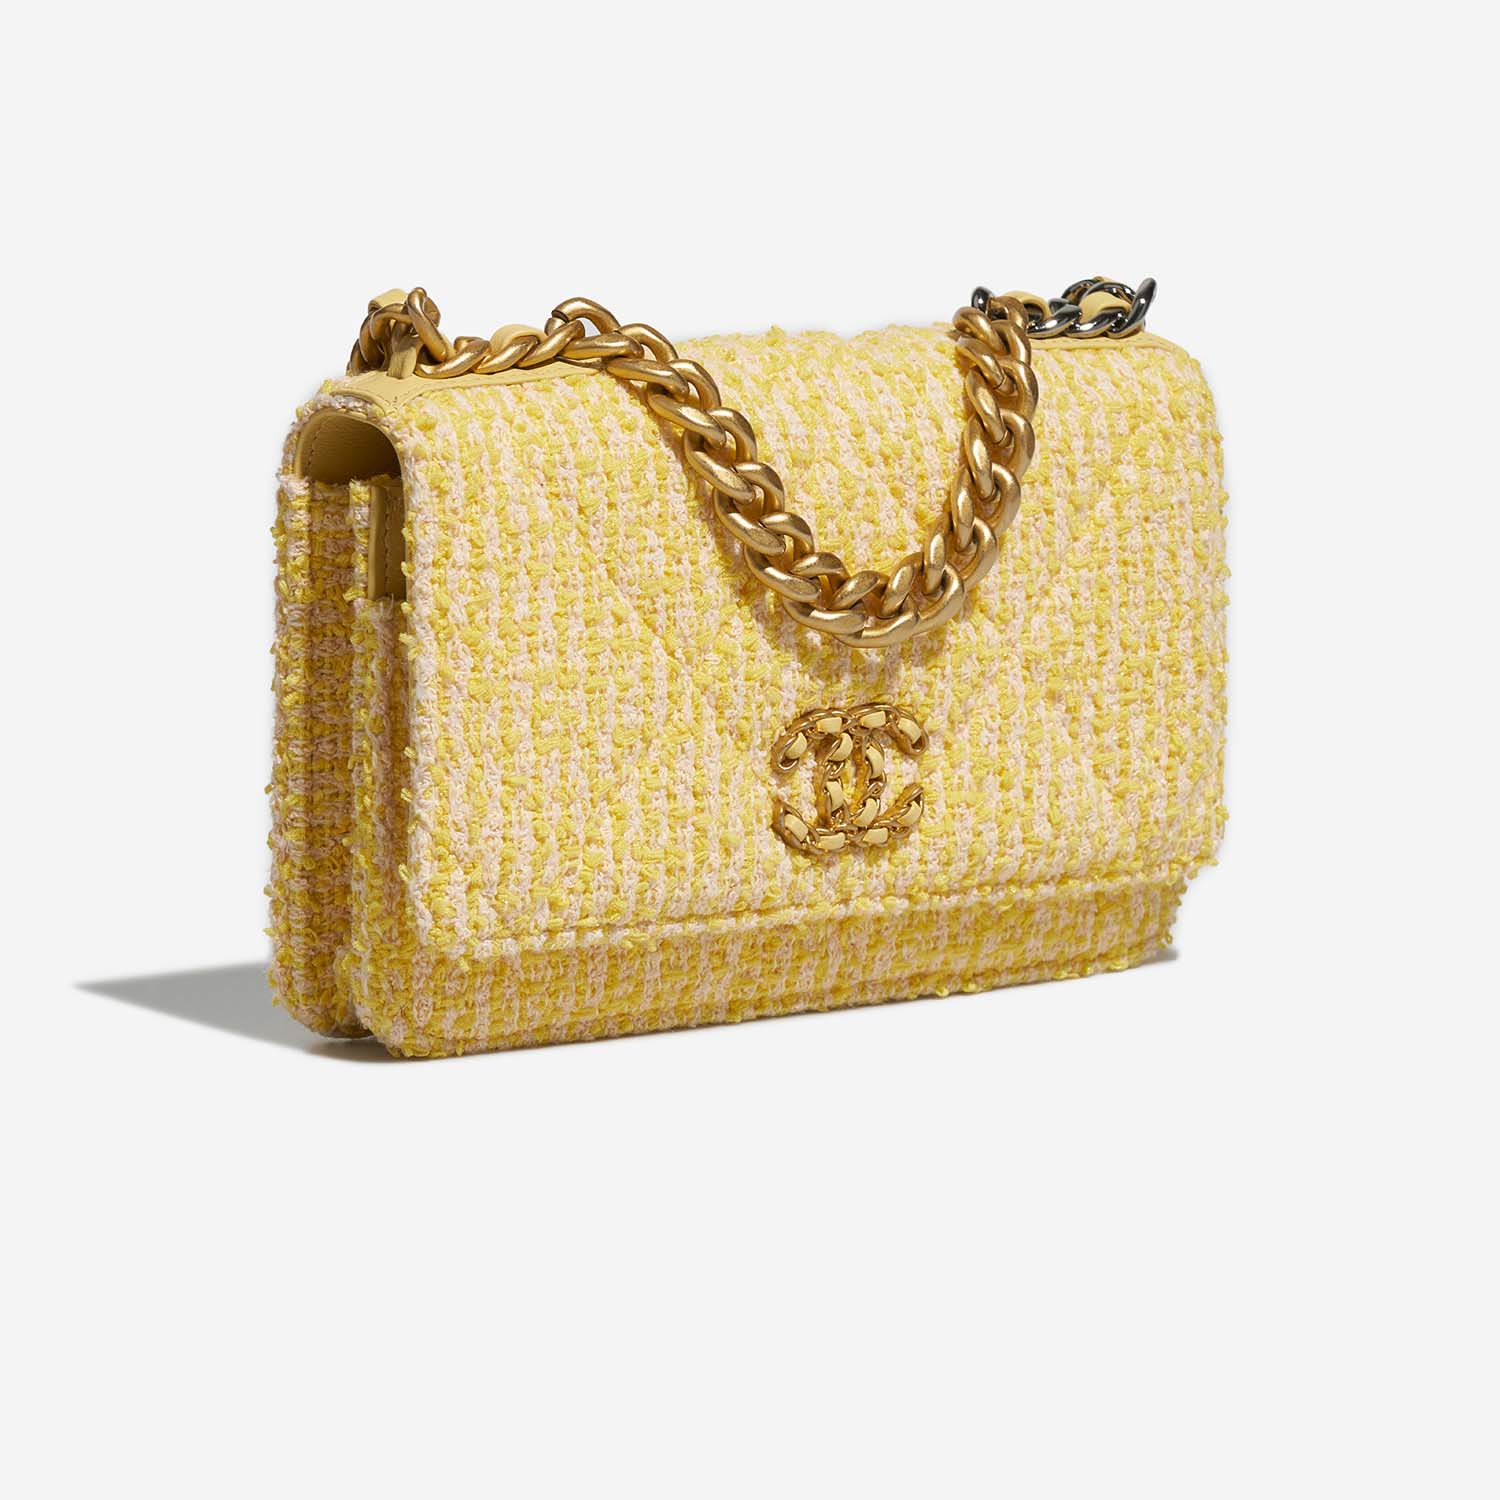 Chanel 19 WOC Gelb-Beige Side Front | Verkaufen Sie Ihre Designer-Tasche auf Saclab.com